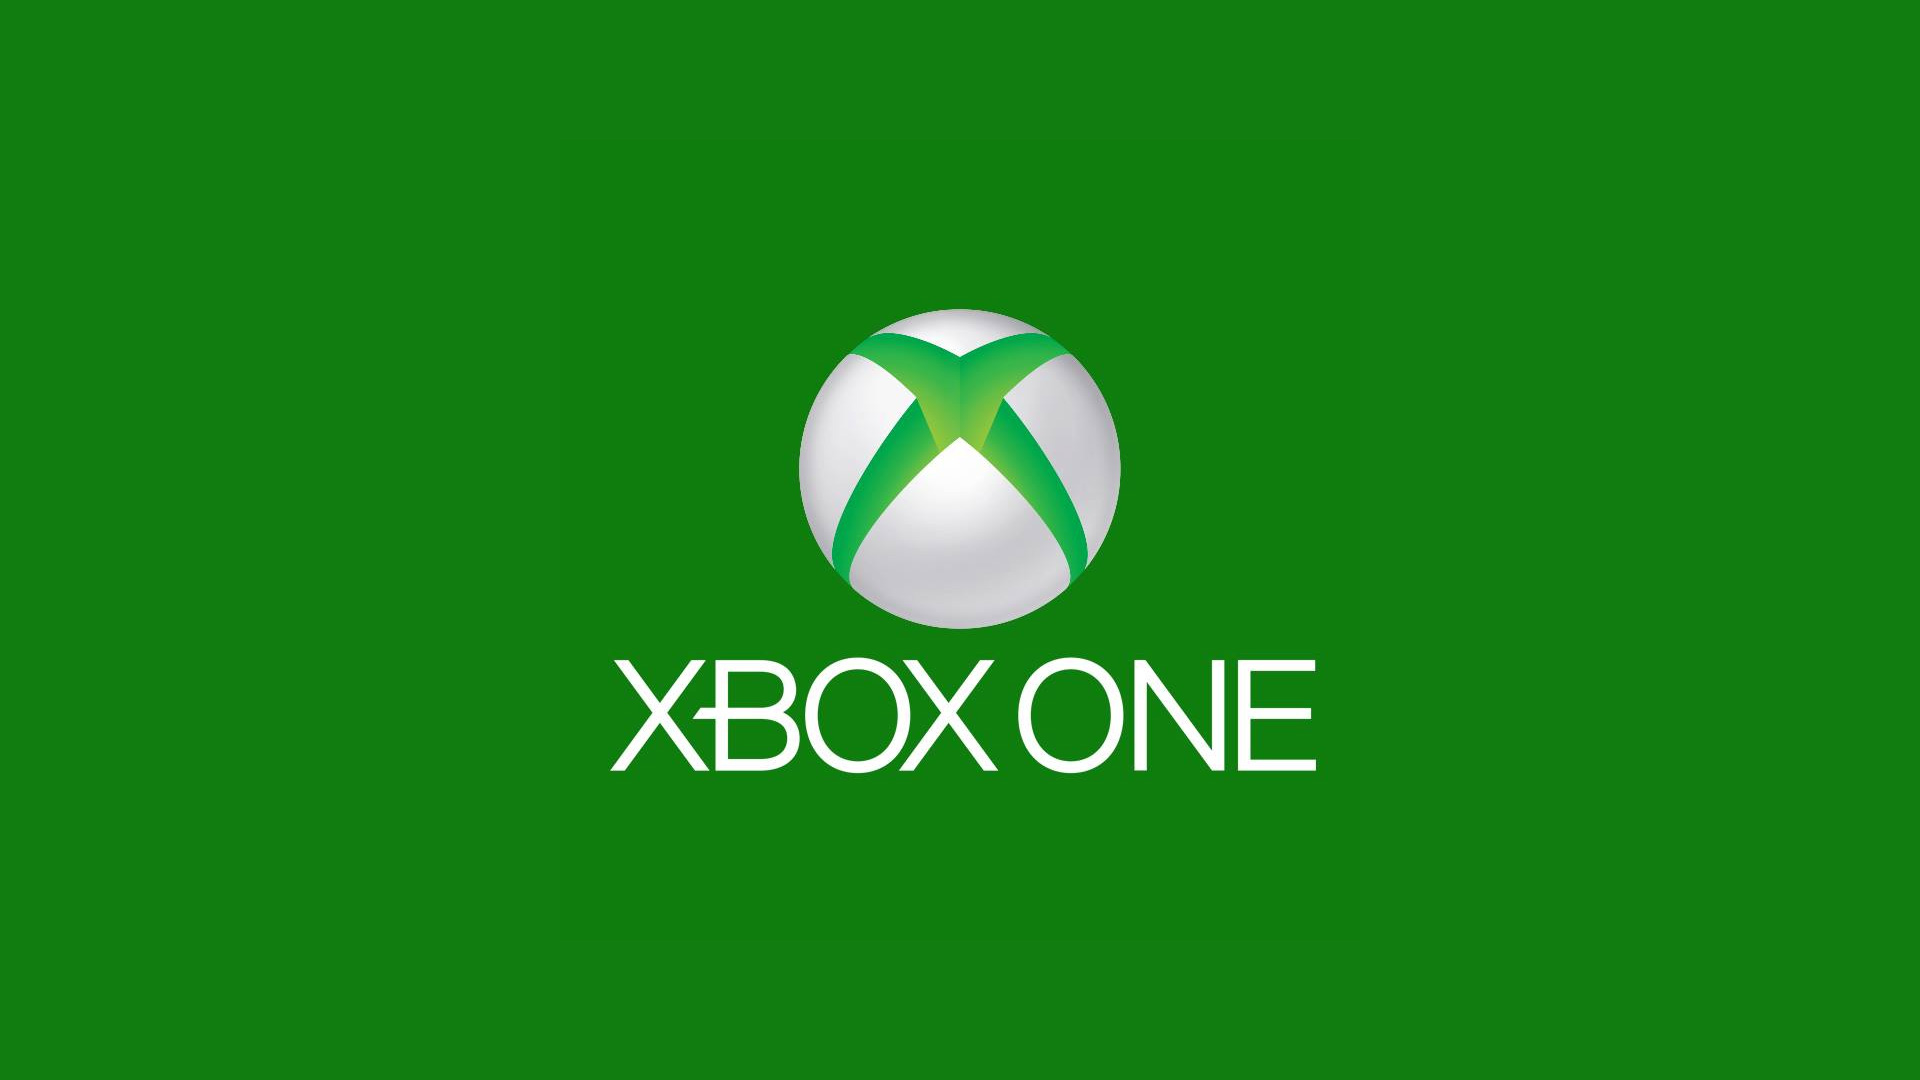 Xbox One Logo 1080p Wallpaper Xbox One Logo 720p Wallpaper 1920x1080